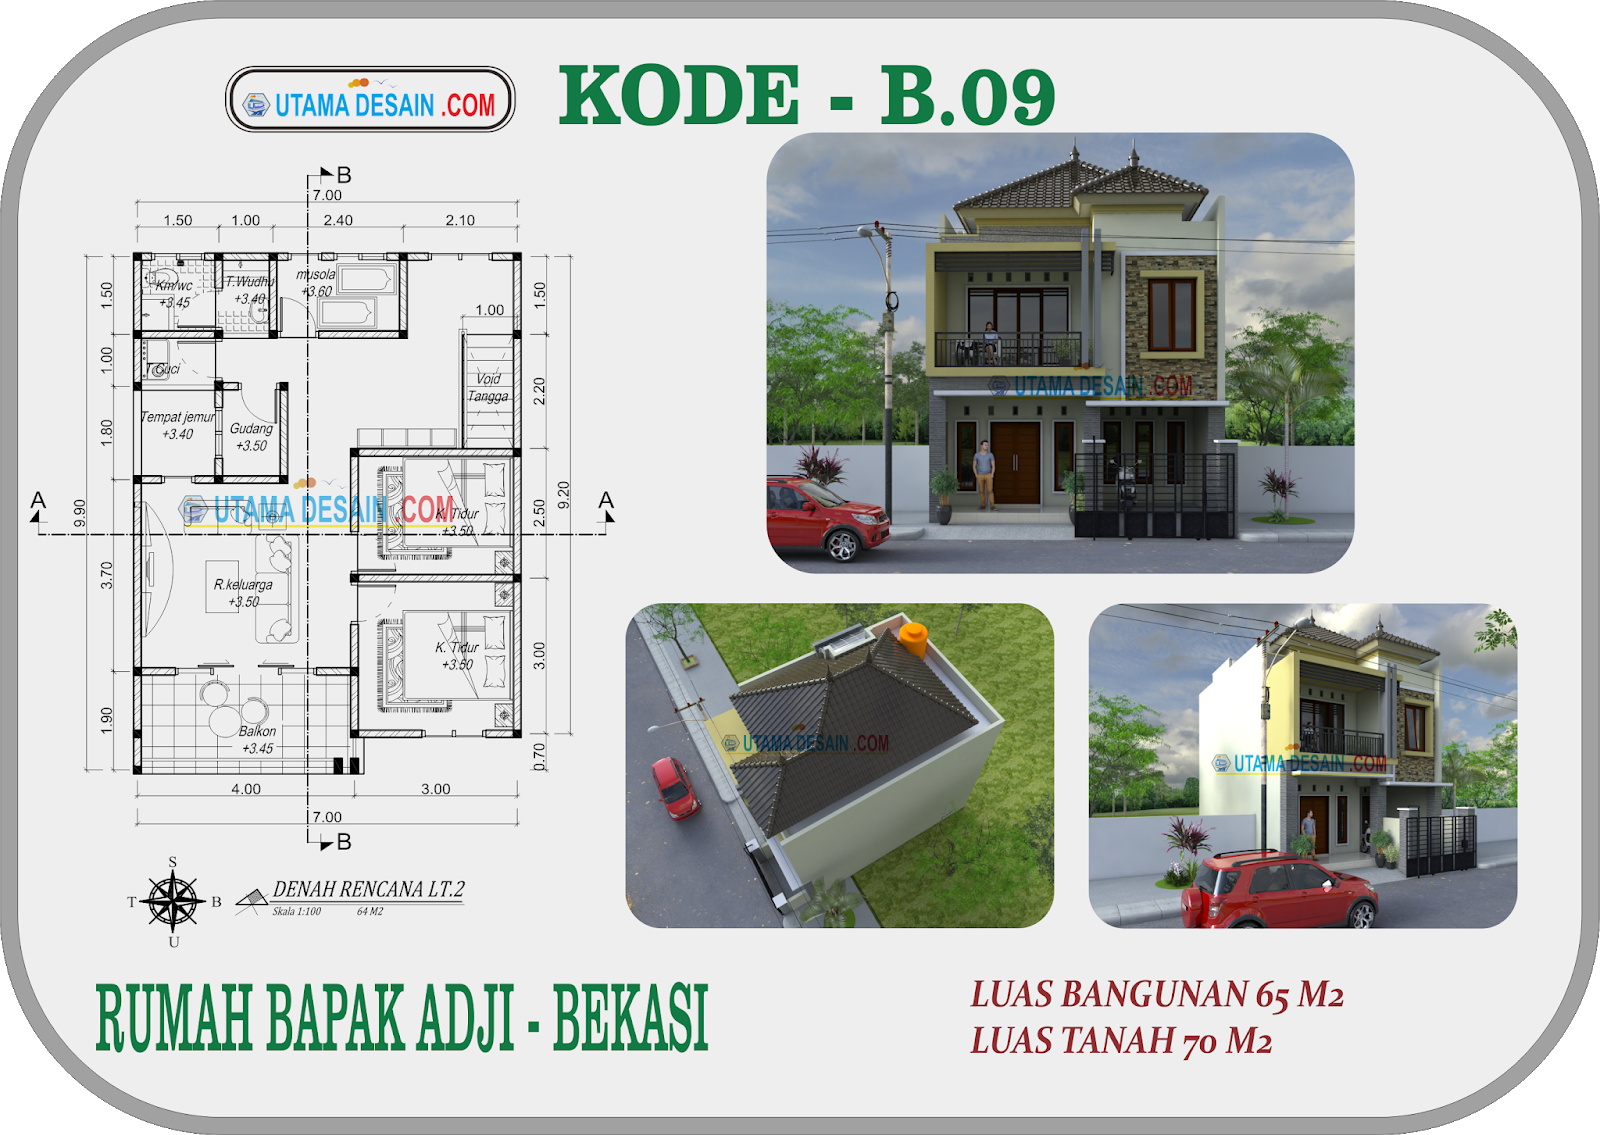 Kode B09 Desain Rumah Minimalis 2 Lantai Bapak Adji Di Bekasi